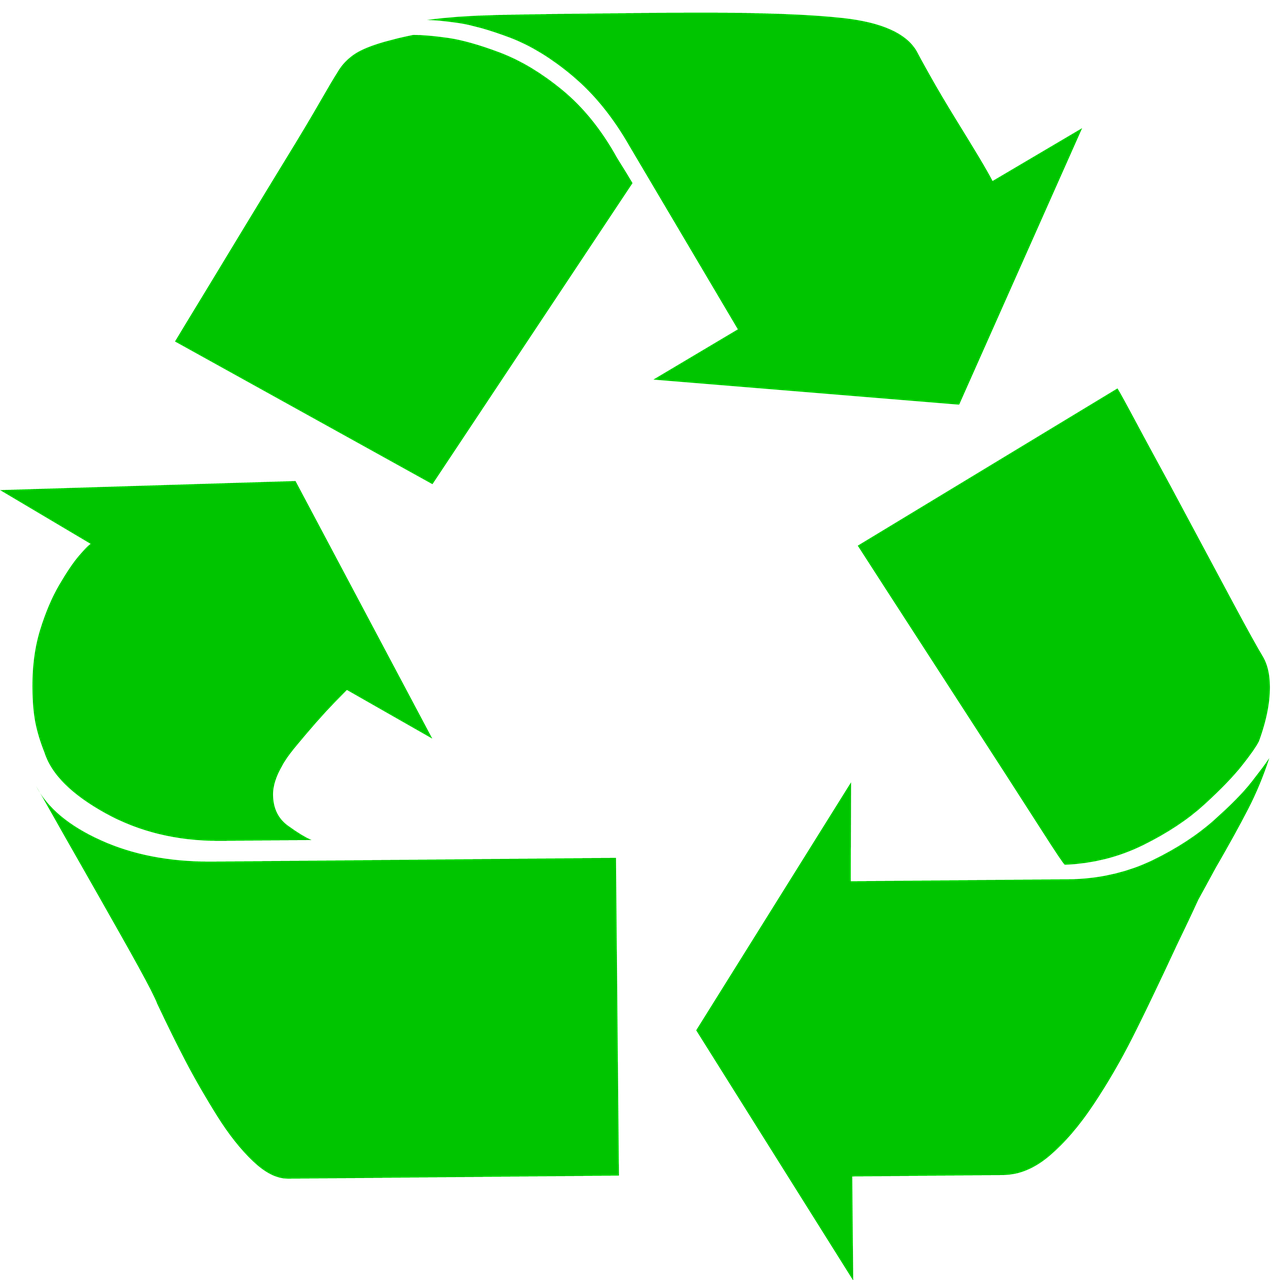 Oznaka reciklaže tj. oznaka da se uređaj ili njegov dio može reciklirati. Oznaka se sastoji od tri zelene stilizirane strelice koje tvore trokut. 